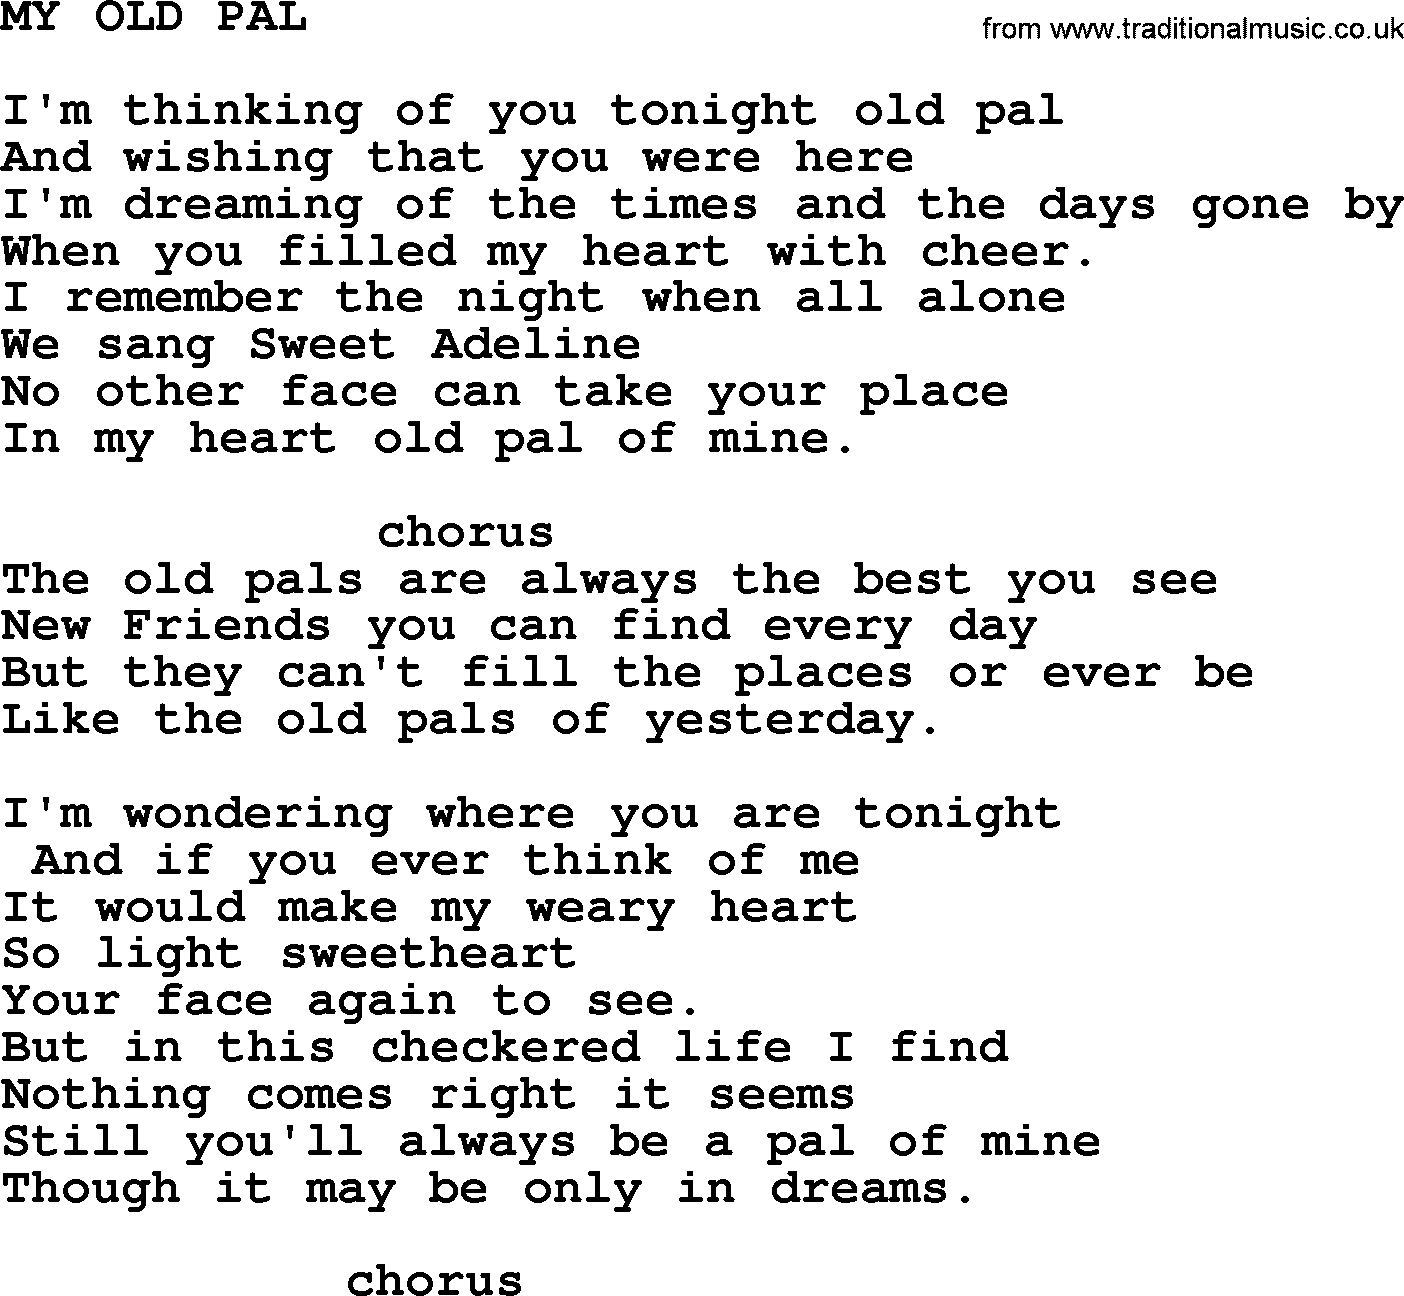 Merle Haggard song: My Old Pal, lyrics.